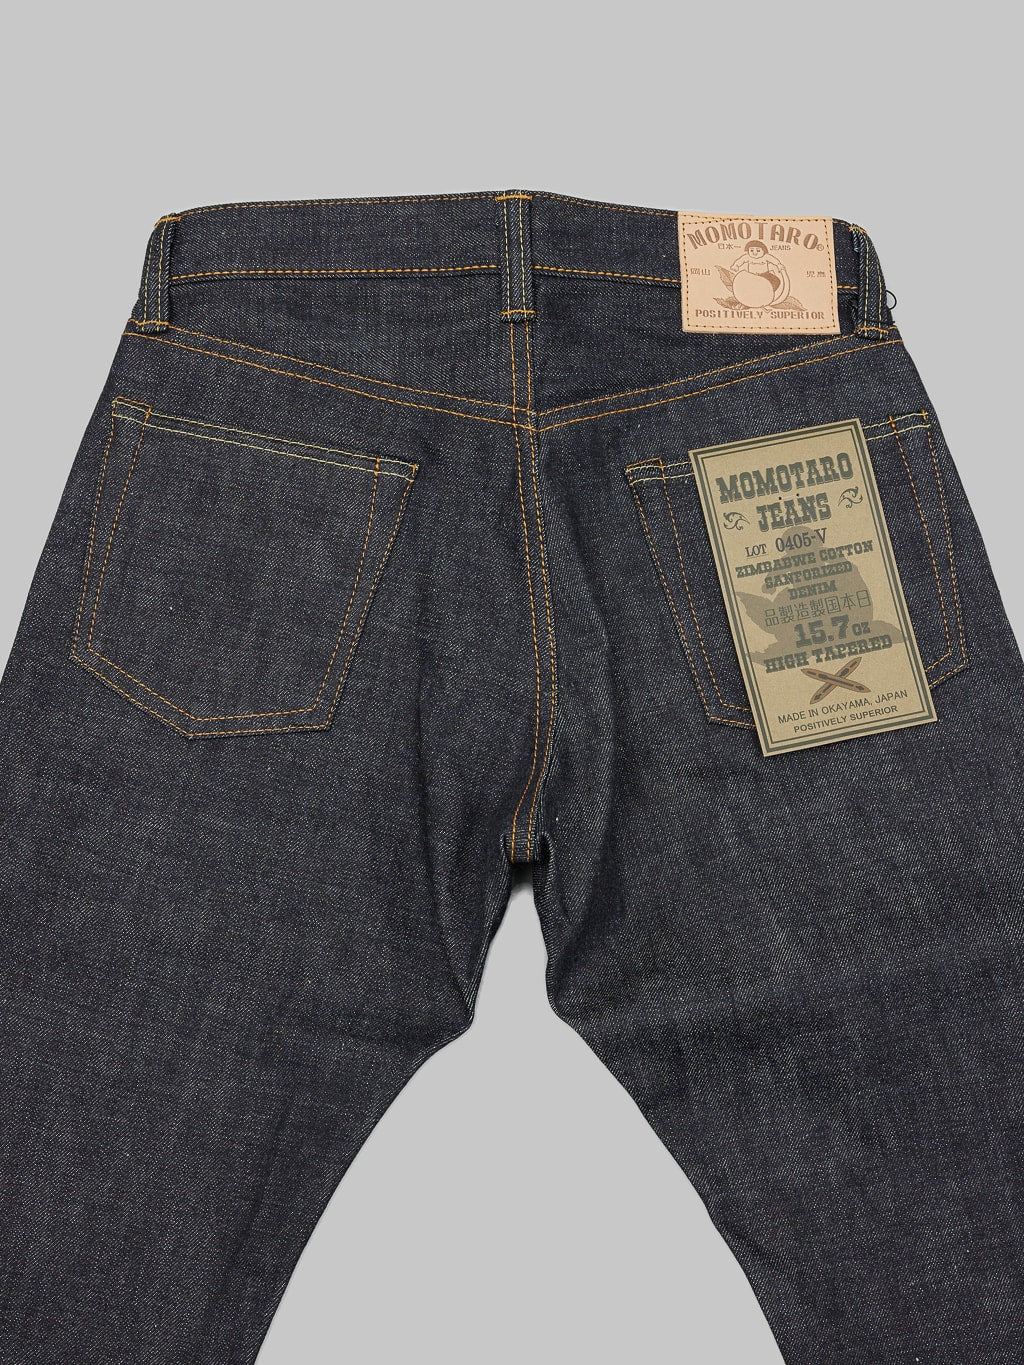 momotaro jeans 0405 v selvedge denim high tapered back pockets